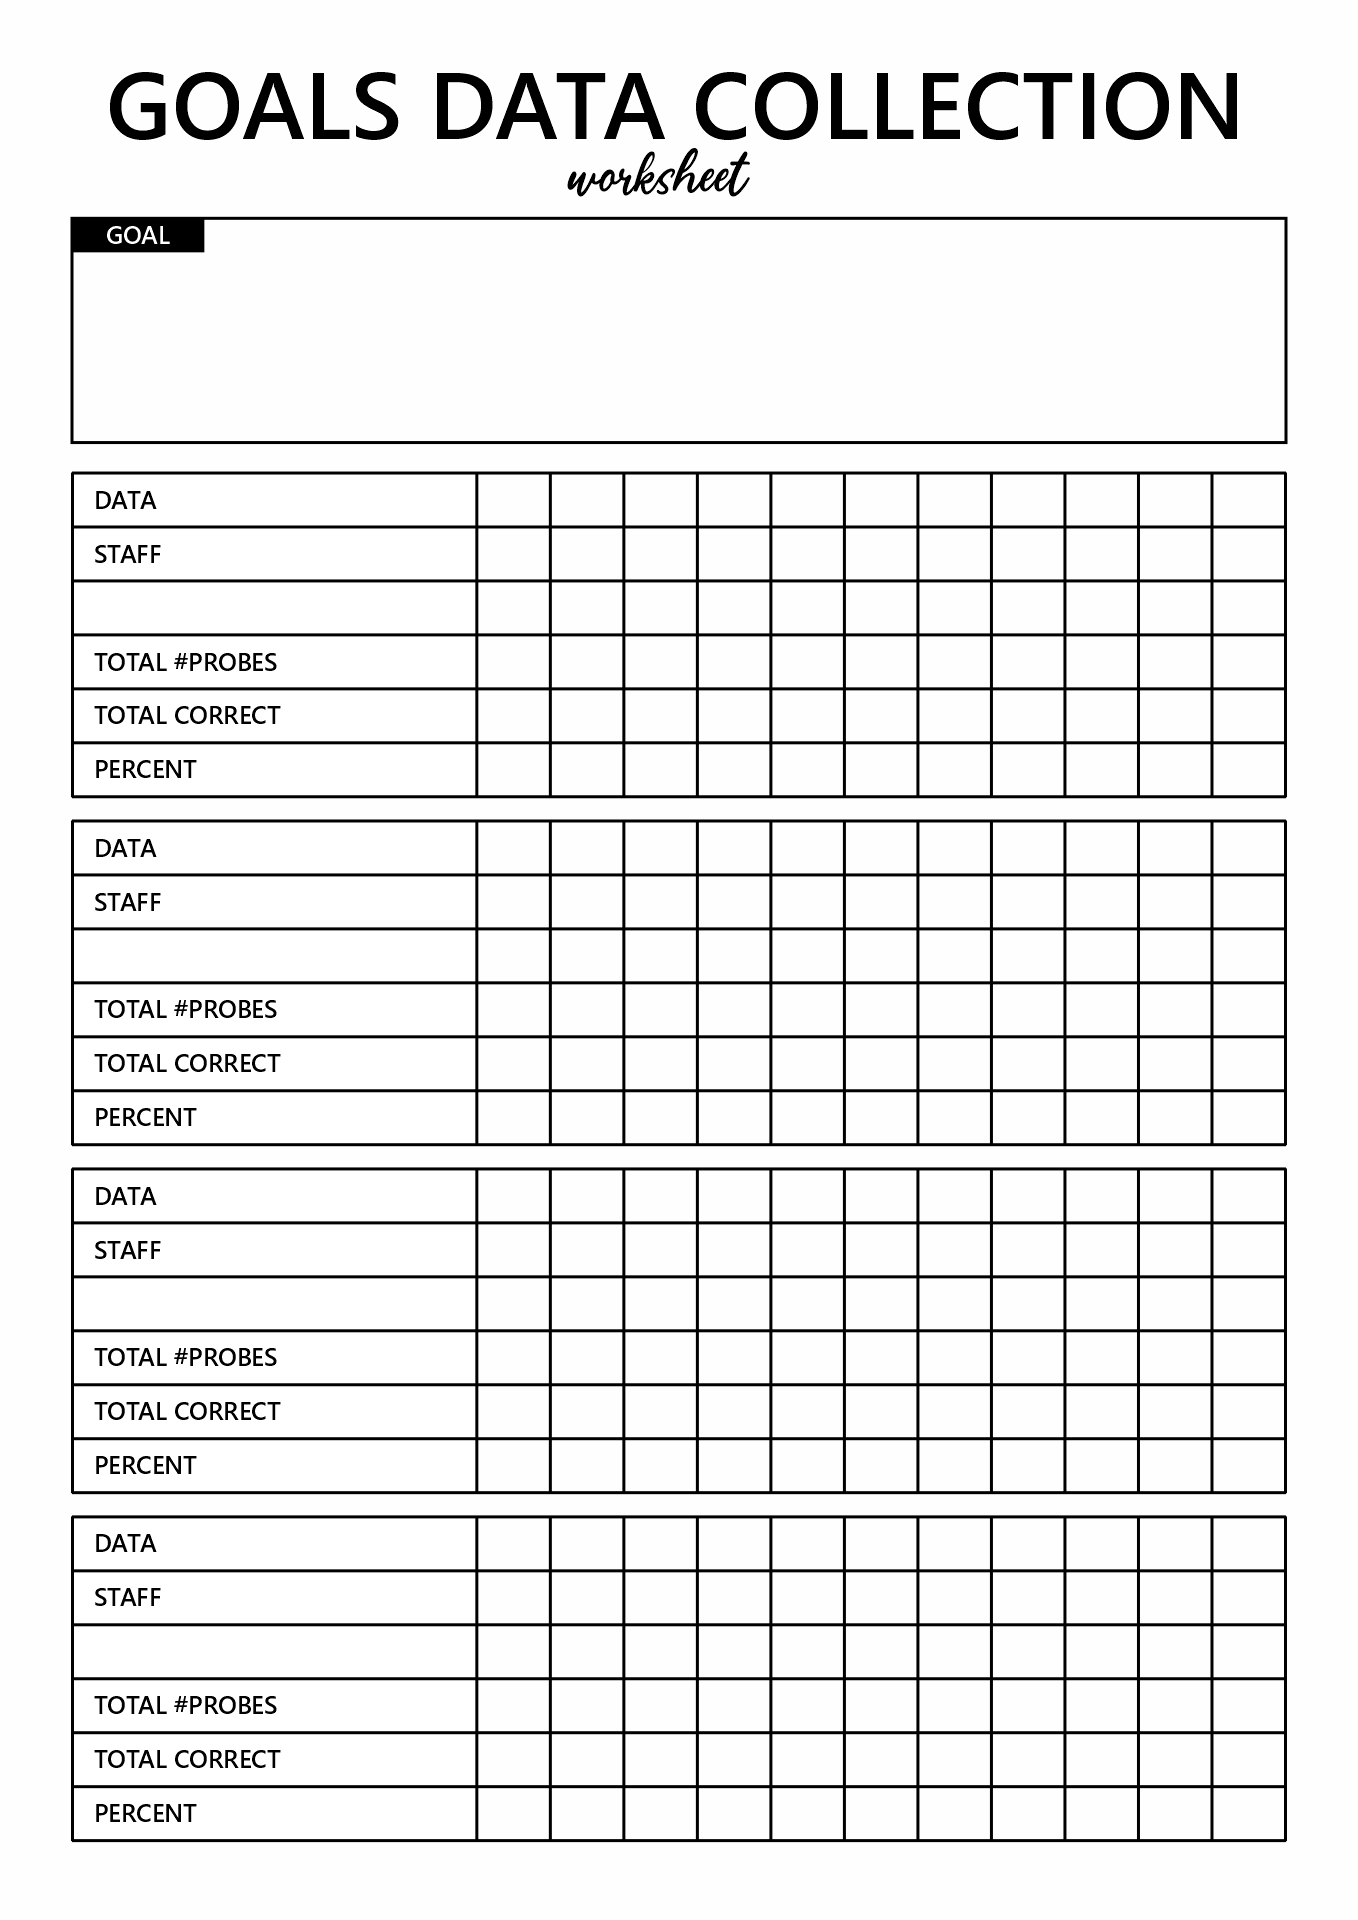 IEP Goals Data Collection Sheet Template